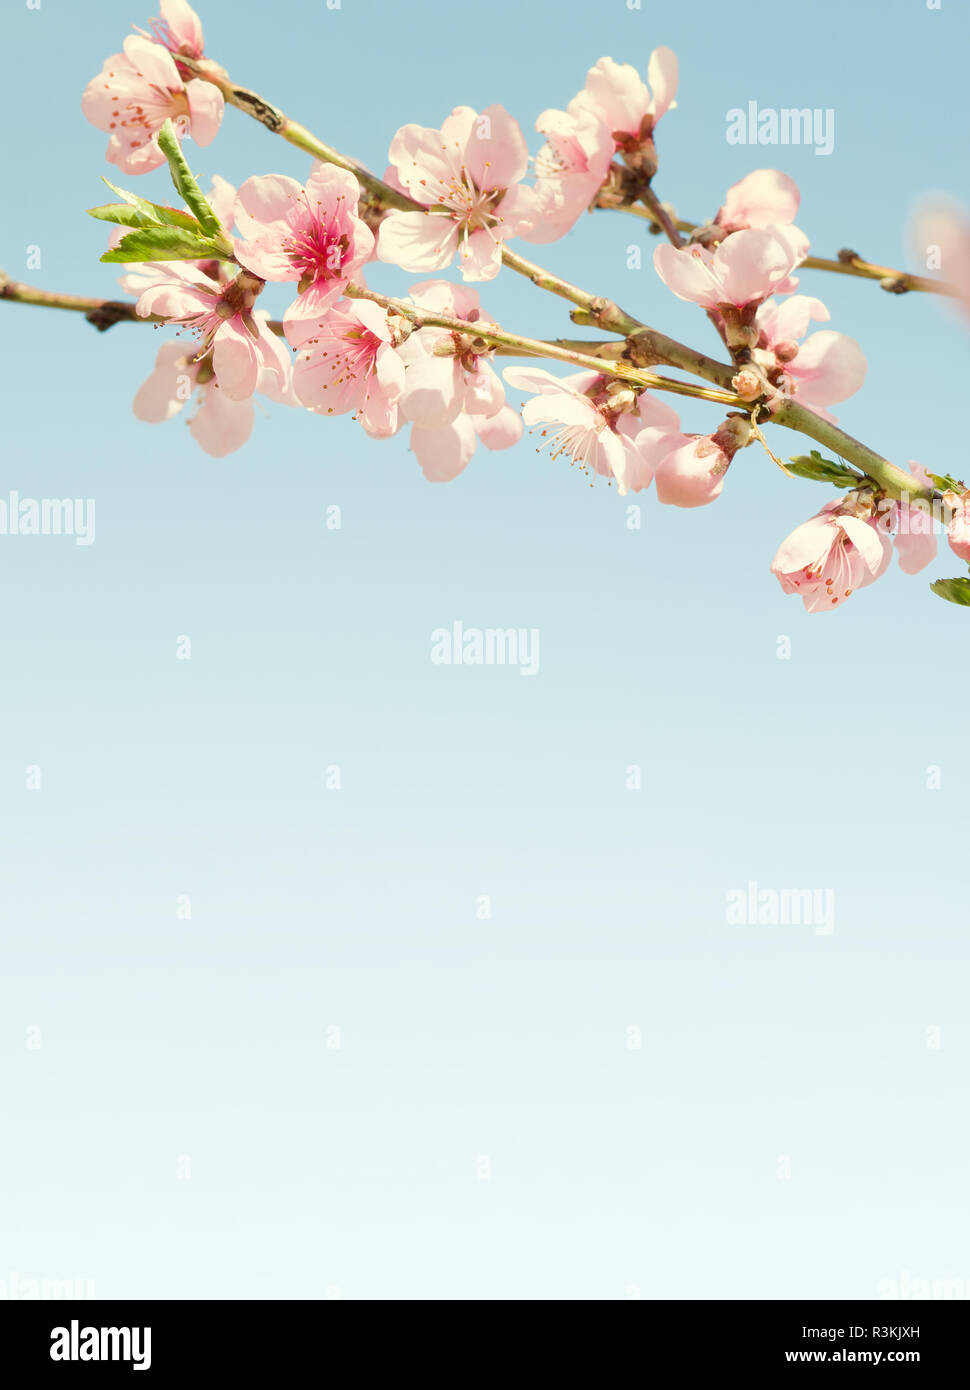 Zweige mit schönen rosa Blumen (Pfirsich) gegen den blauen Himmel. Selektive konzentrieren. Fokus auf in der Nähe von Blumen. Getönten Bild. Stockfoto